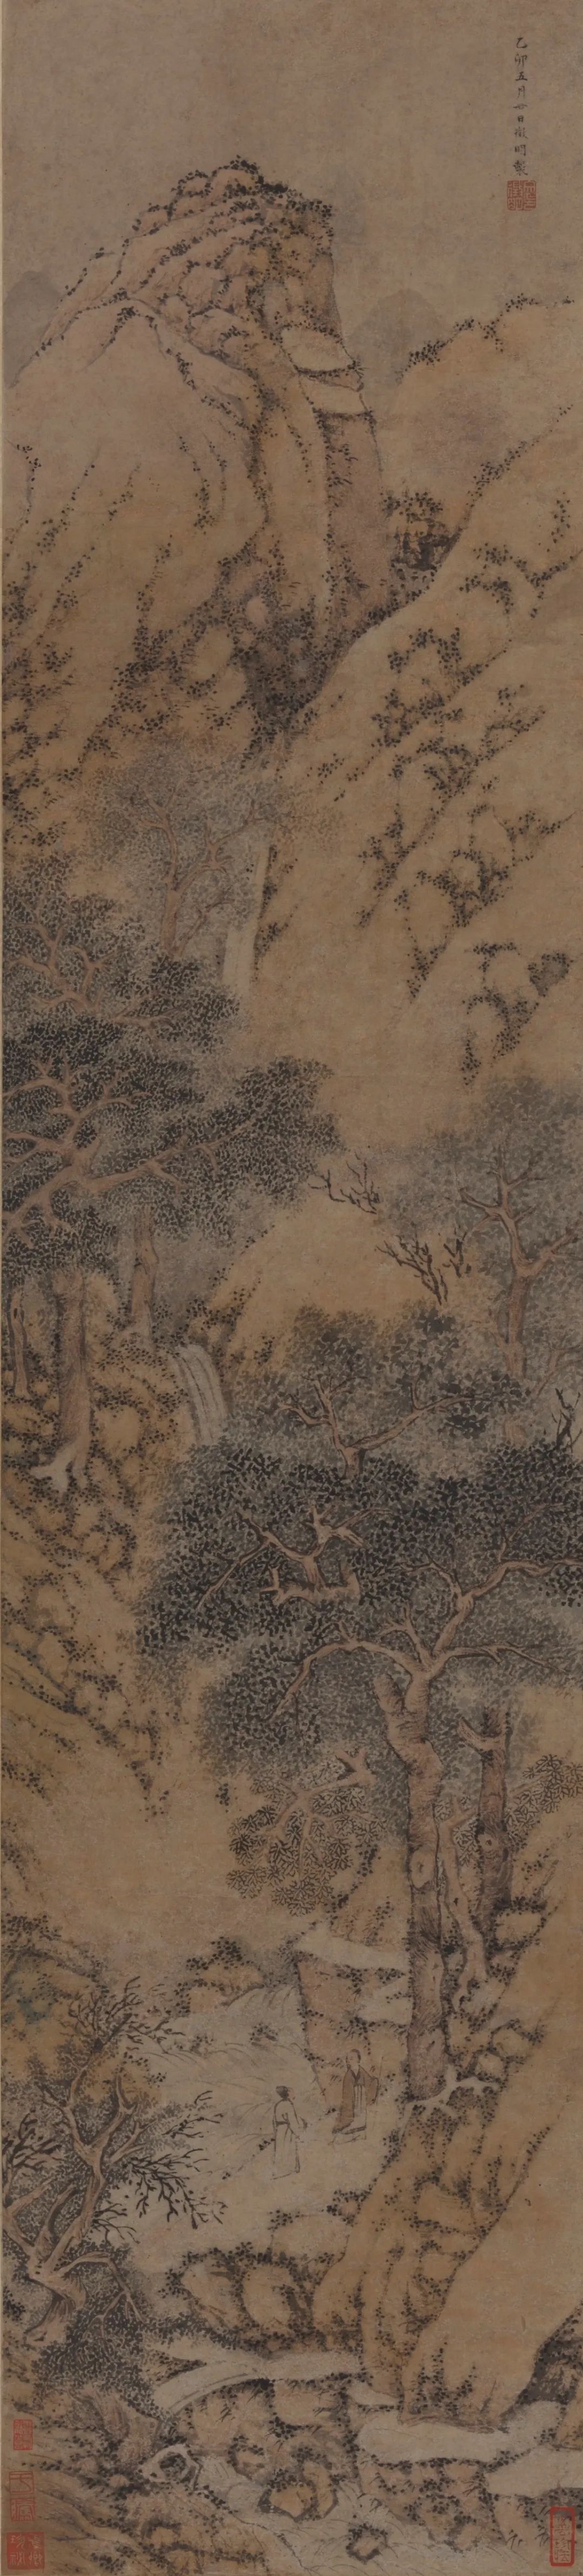 Ming Wen Zhengming's "Flying Spring Map"